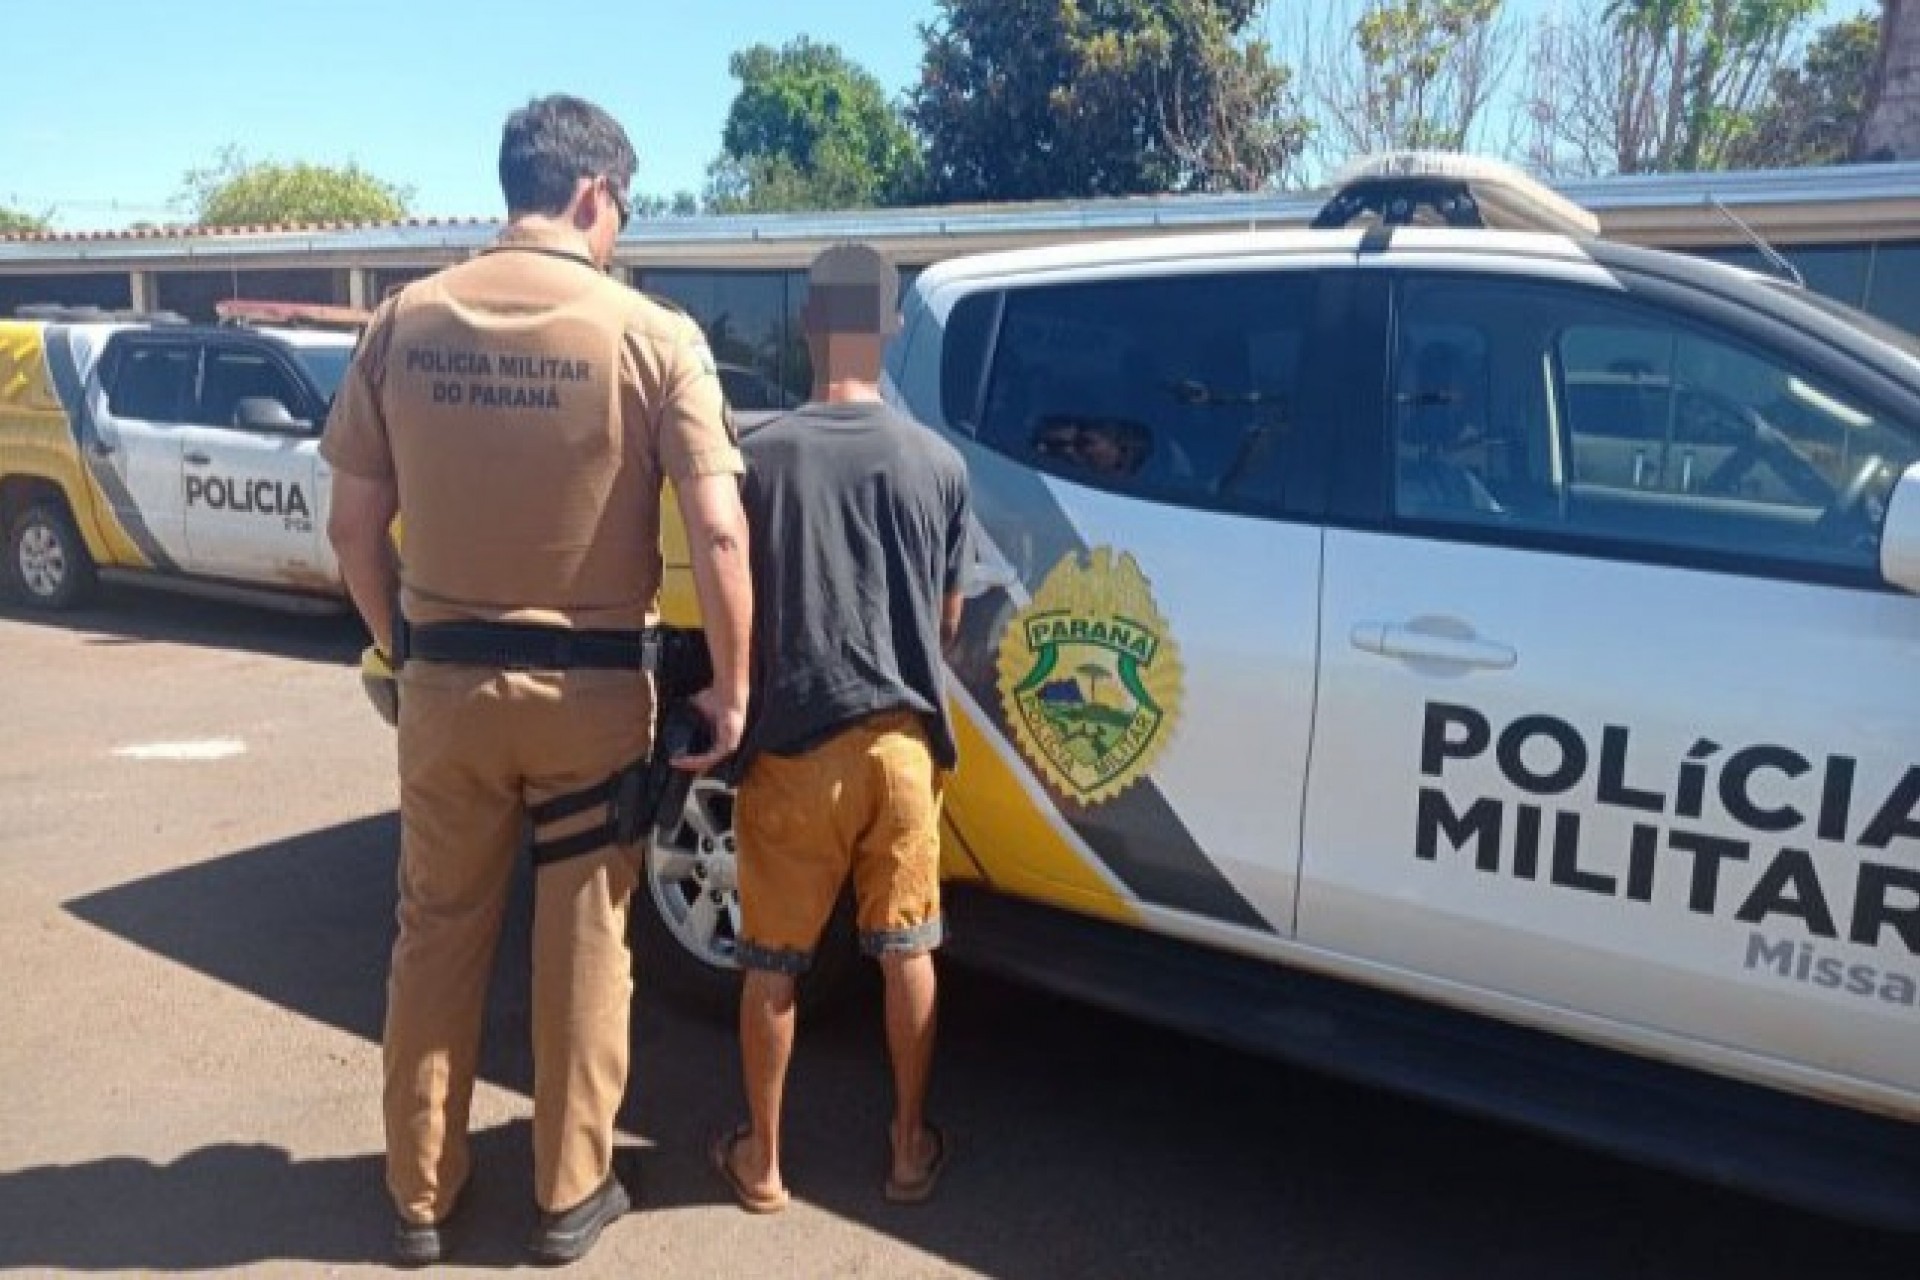 Missal: Polícia Militar cumpre mandado de prisão no Portão do Ocoí